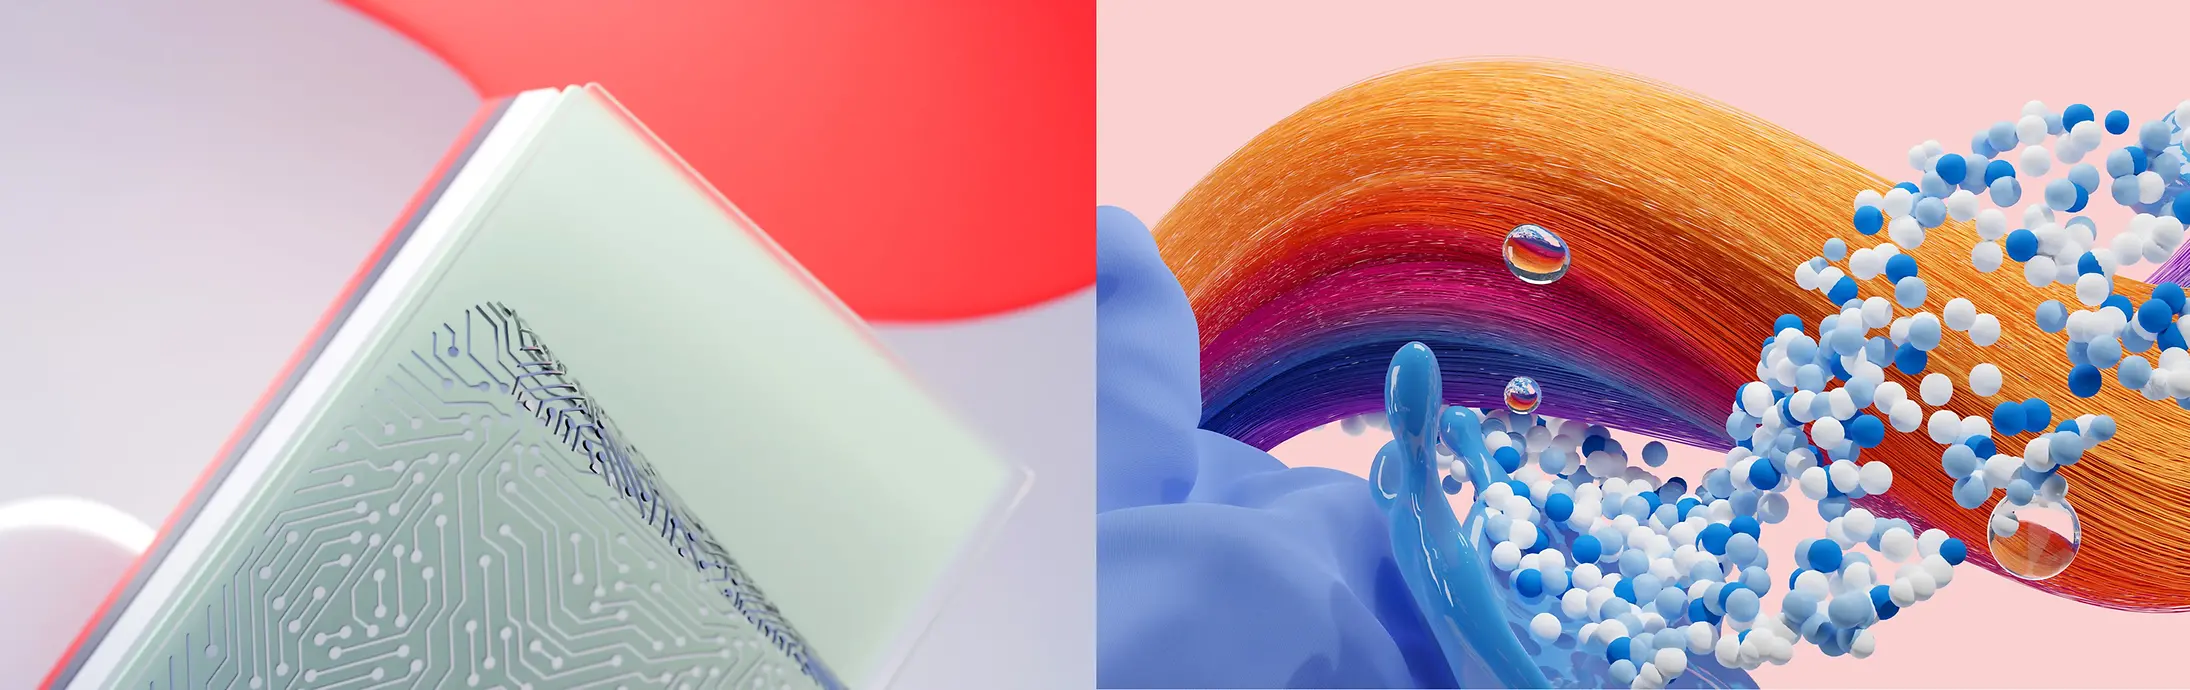 Abstrakti kuva, joka edustaa Henkelin Adhesive Technologies, Consumer Brands (Hiuksia sekä pyykinpesua ja kotihoitoa).